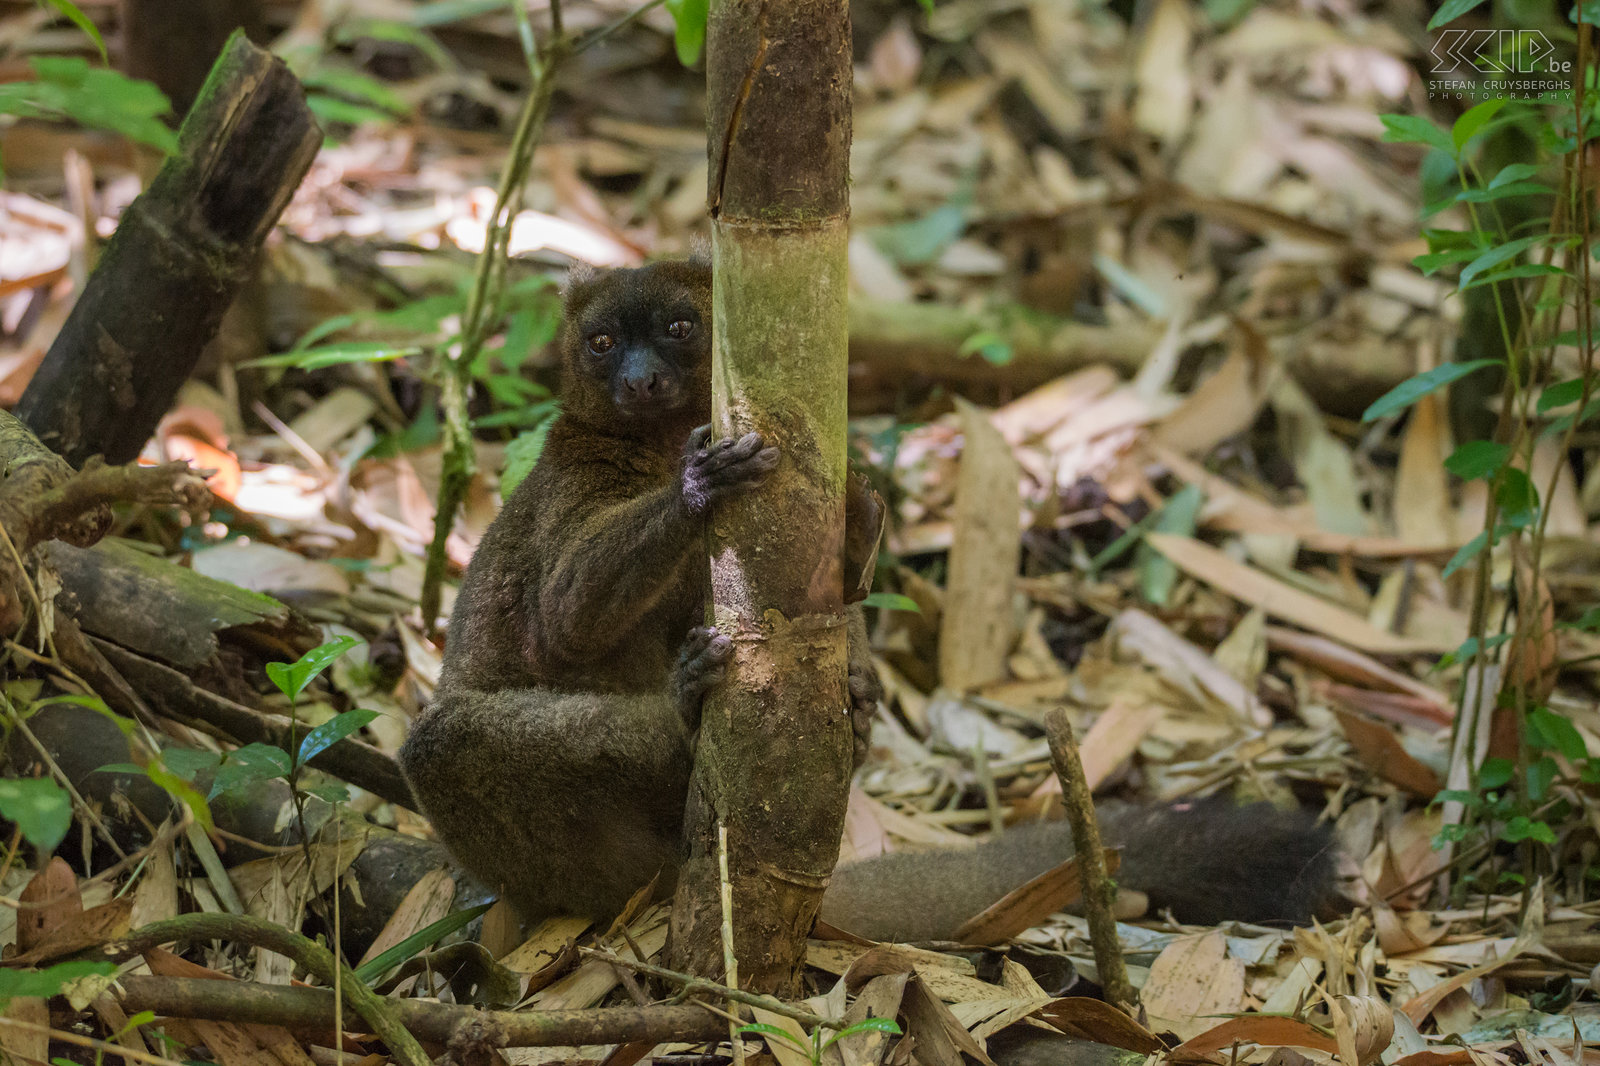 Ranomafana - Breedsnuithalfmaki  De breedsnuithalfmaki (Greater bamboo lemur, Prolemur simus) is de grootste halfmaki of bamboemaki en een van 's werelds meest bedreigde primaten. Ze leven in groepen tot 28 individuen en ze voeden zich alleen met bamboe bladeren en scheuten. Stefan Cruysberghs